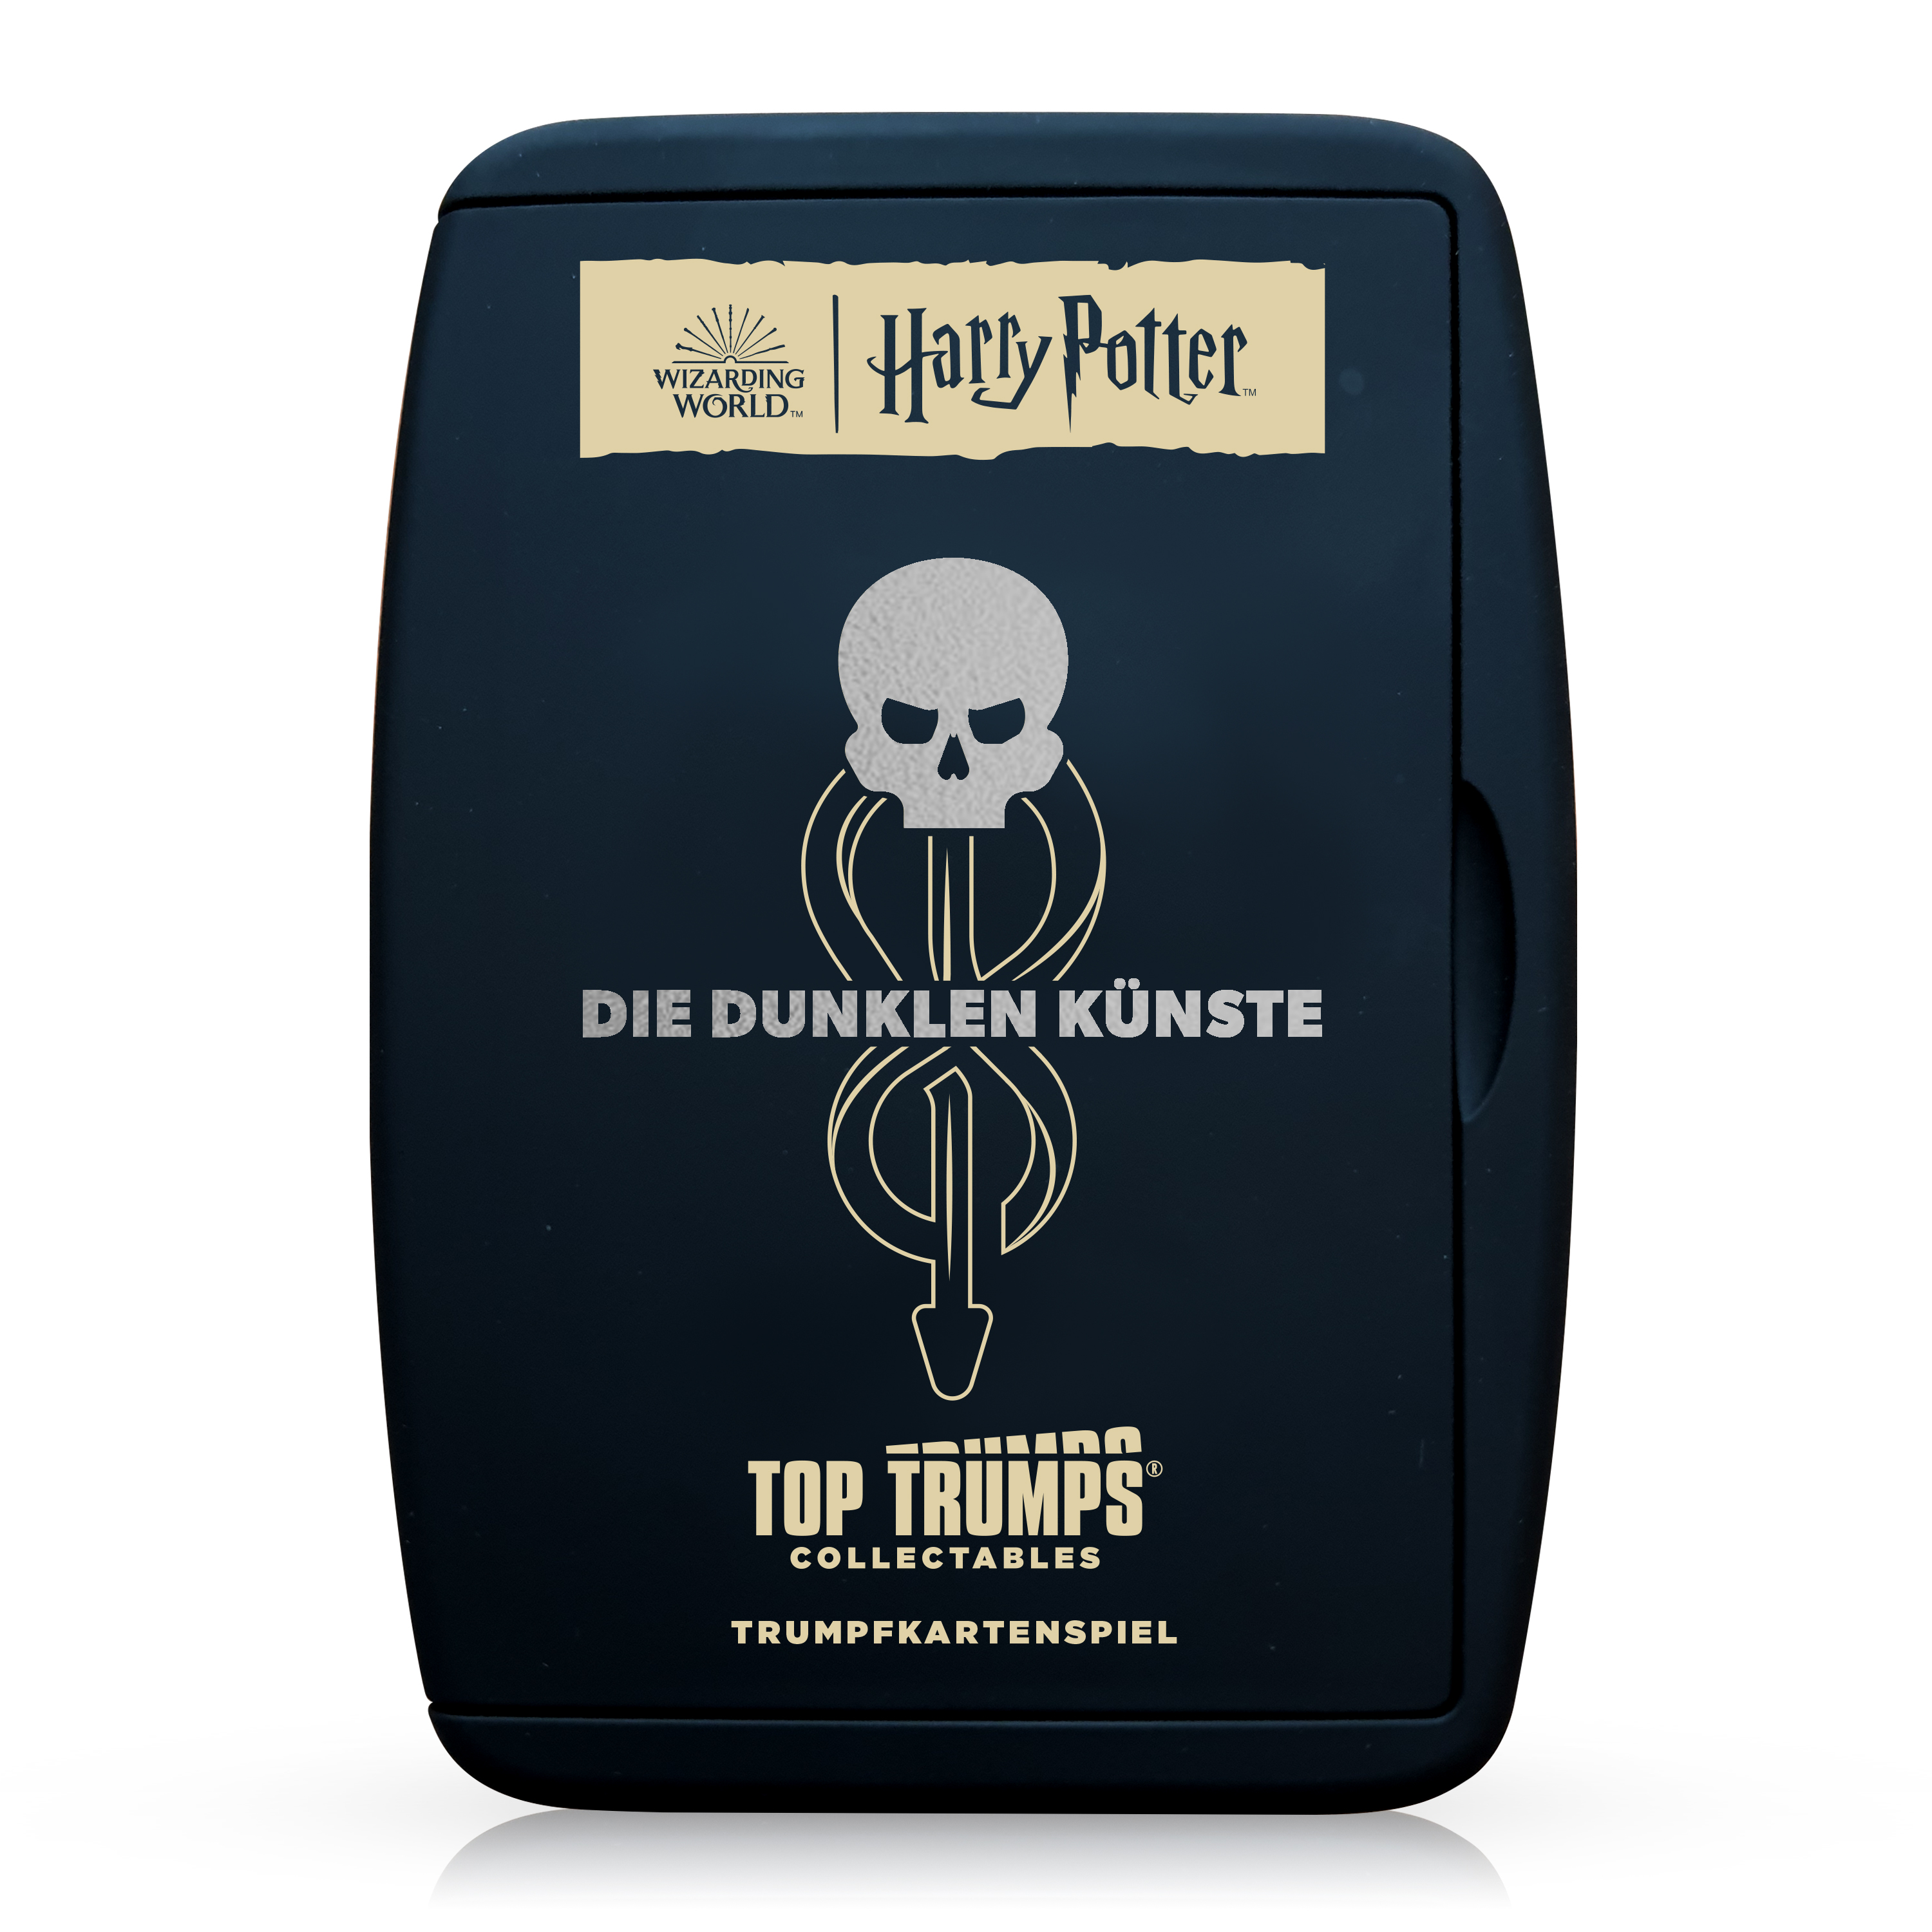 Top Trumps Collectables - Harry Potter Dunkle Künste